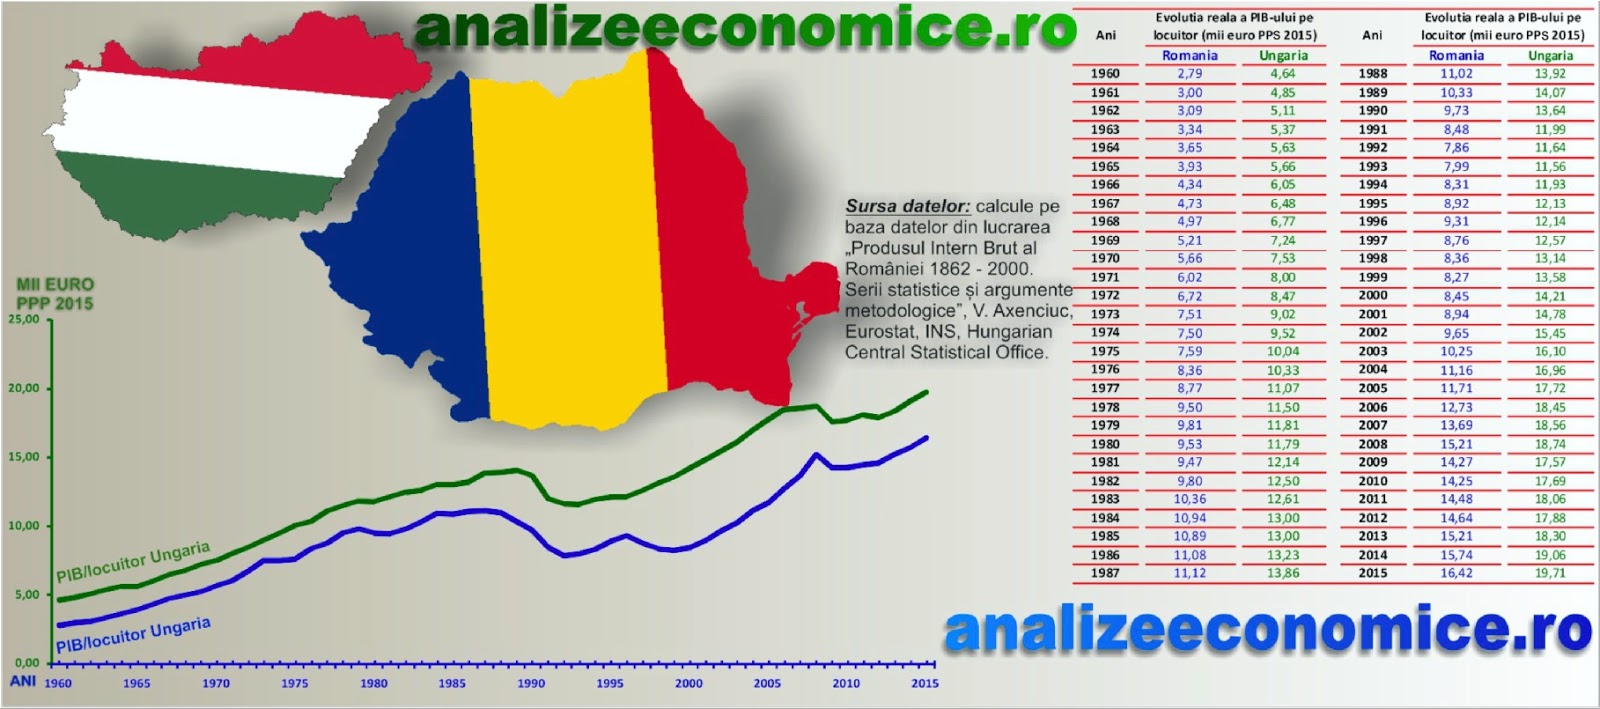 Supple suicide Converge Analize economice: România vs. Ungaria - Evoluția PIB-ului pe locuitor  între 1960 și 2015